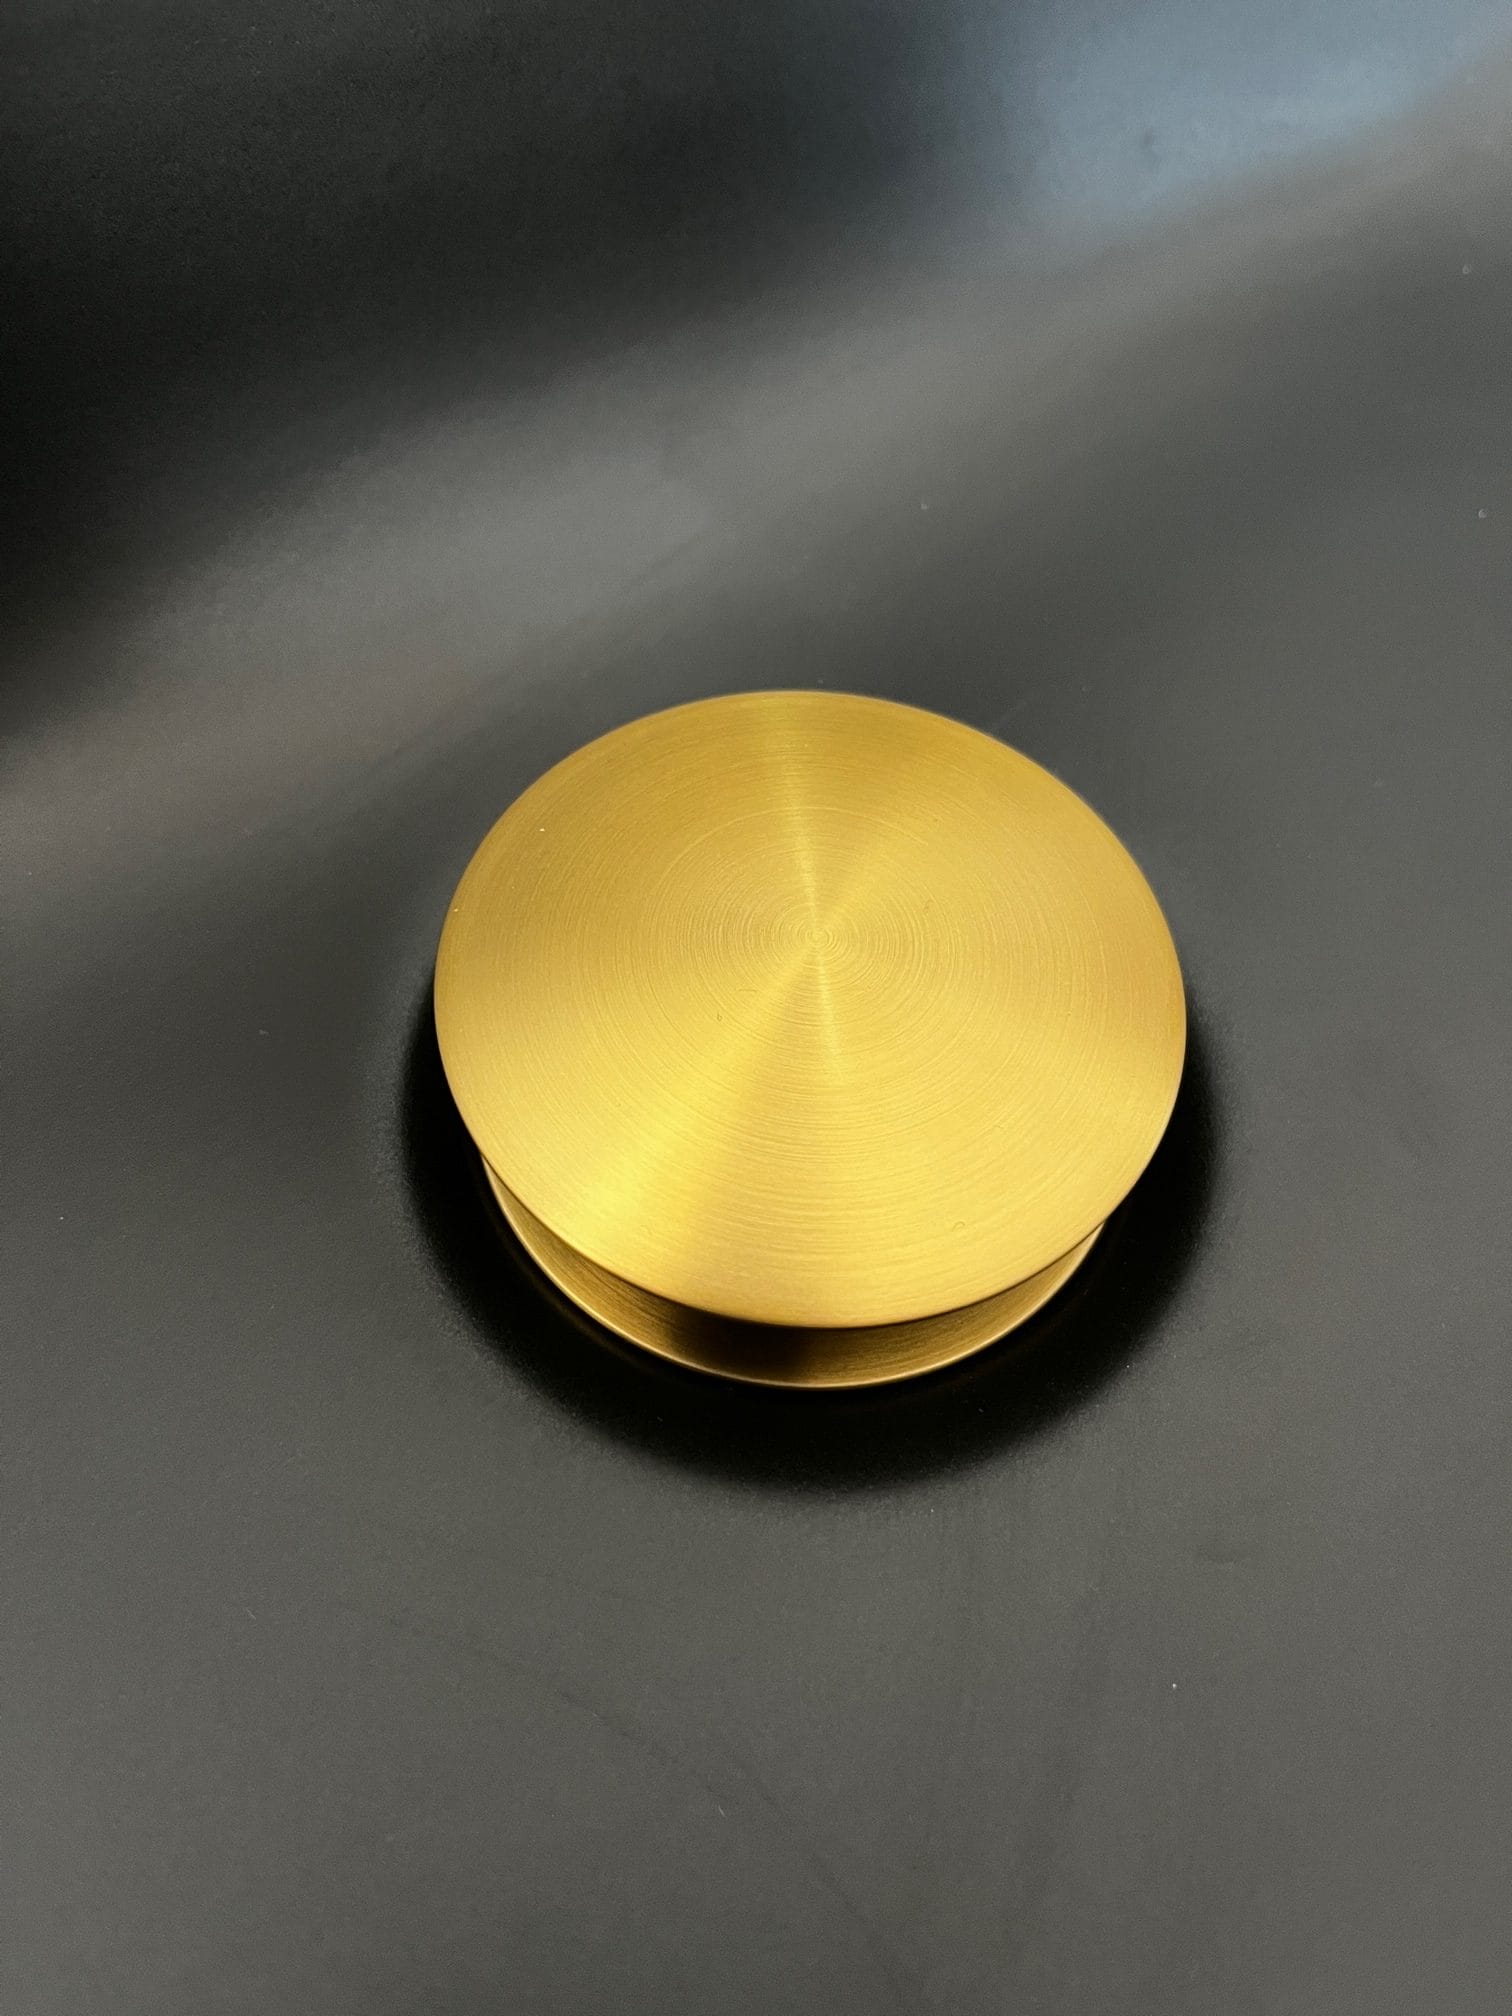 Válvula clic clac para lavabo para montaje con o sin orificio de desborde  hecha en metal oro rosado Rea